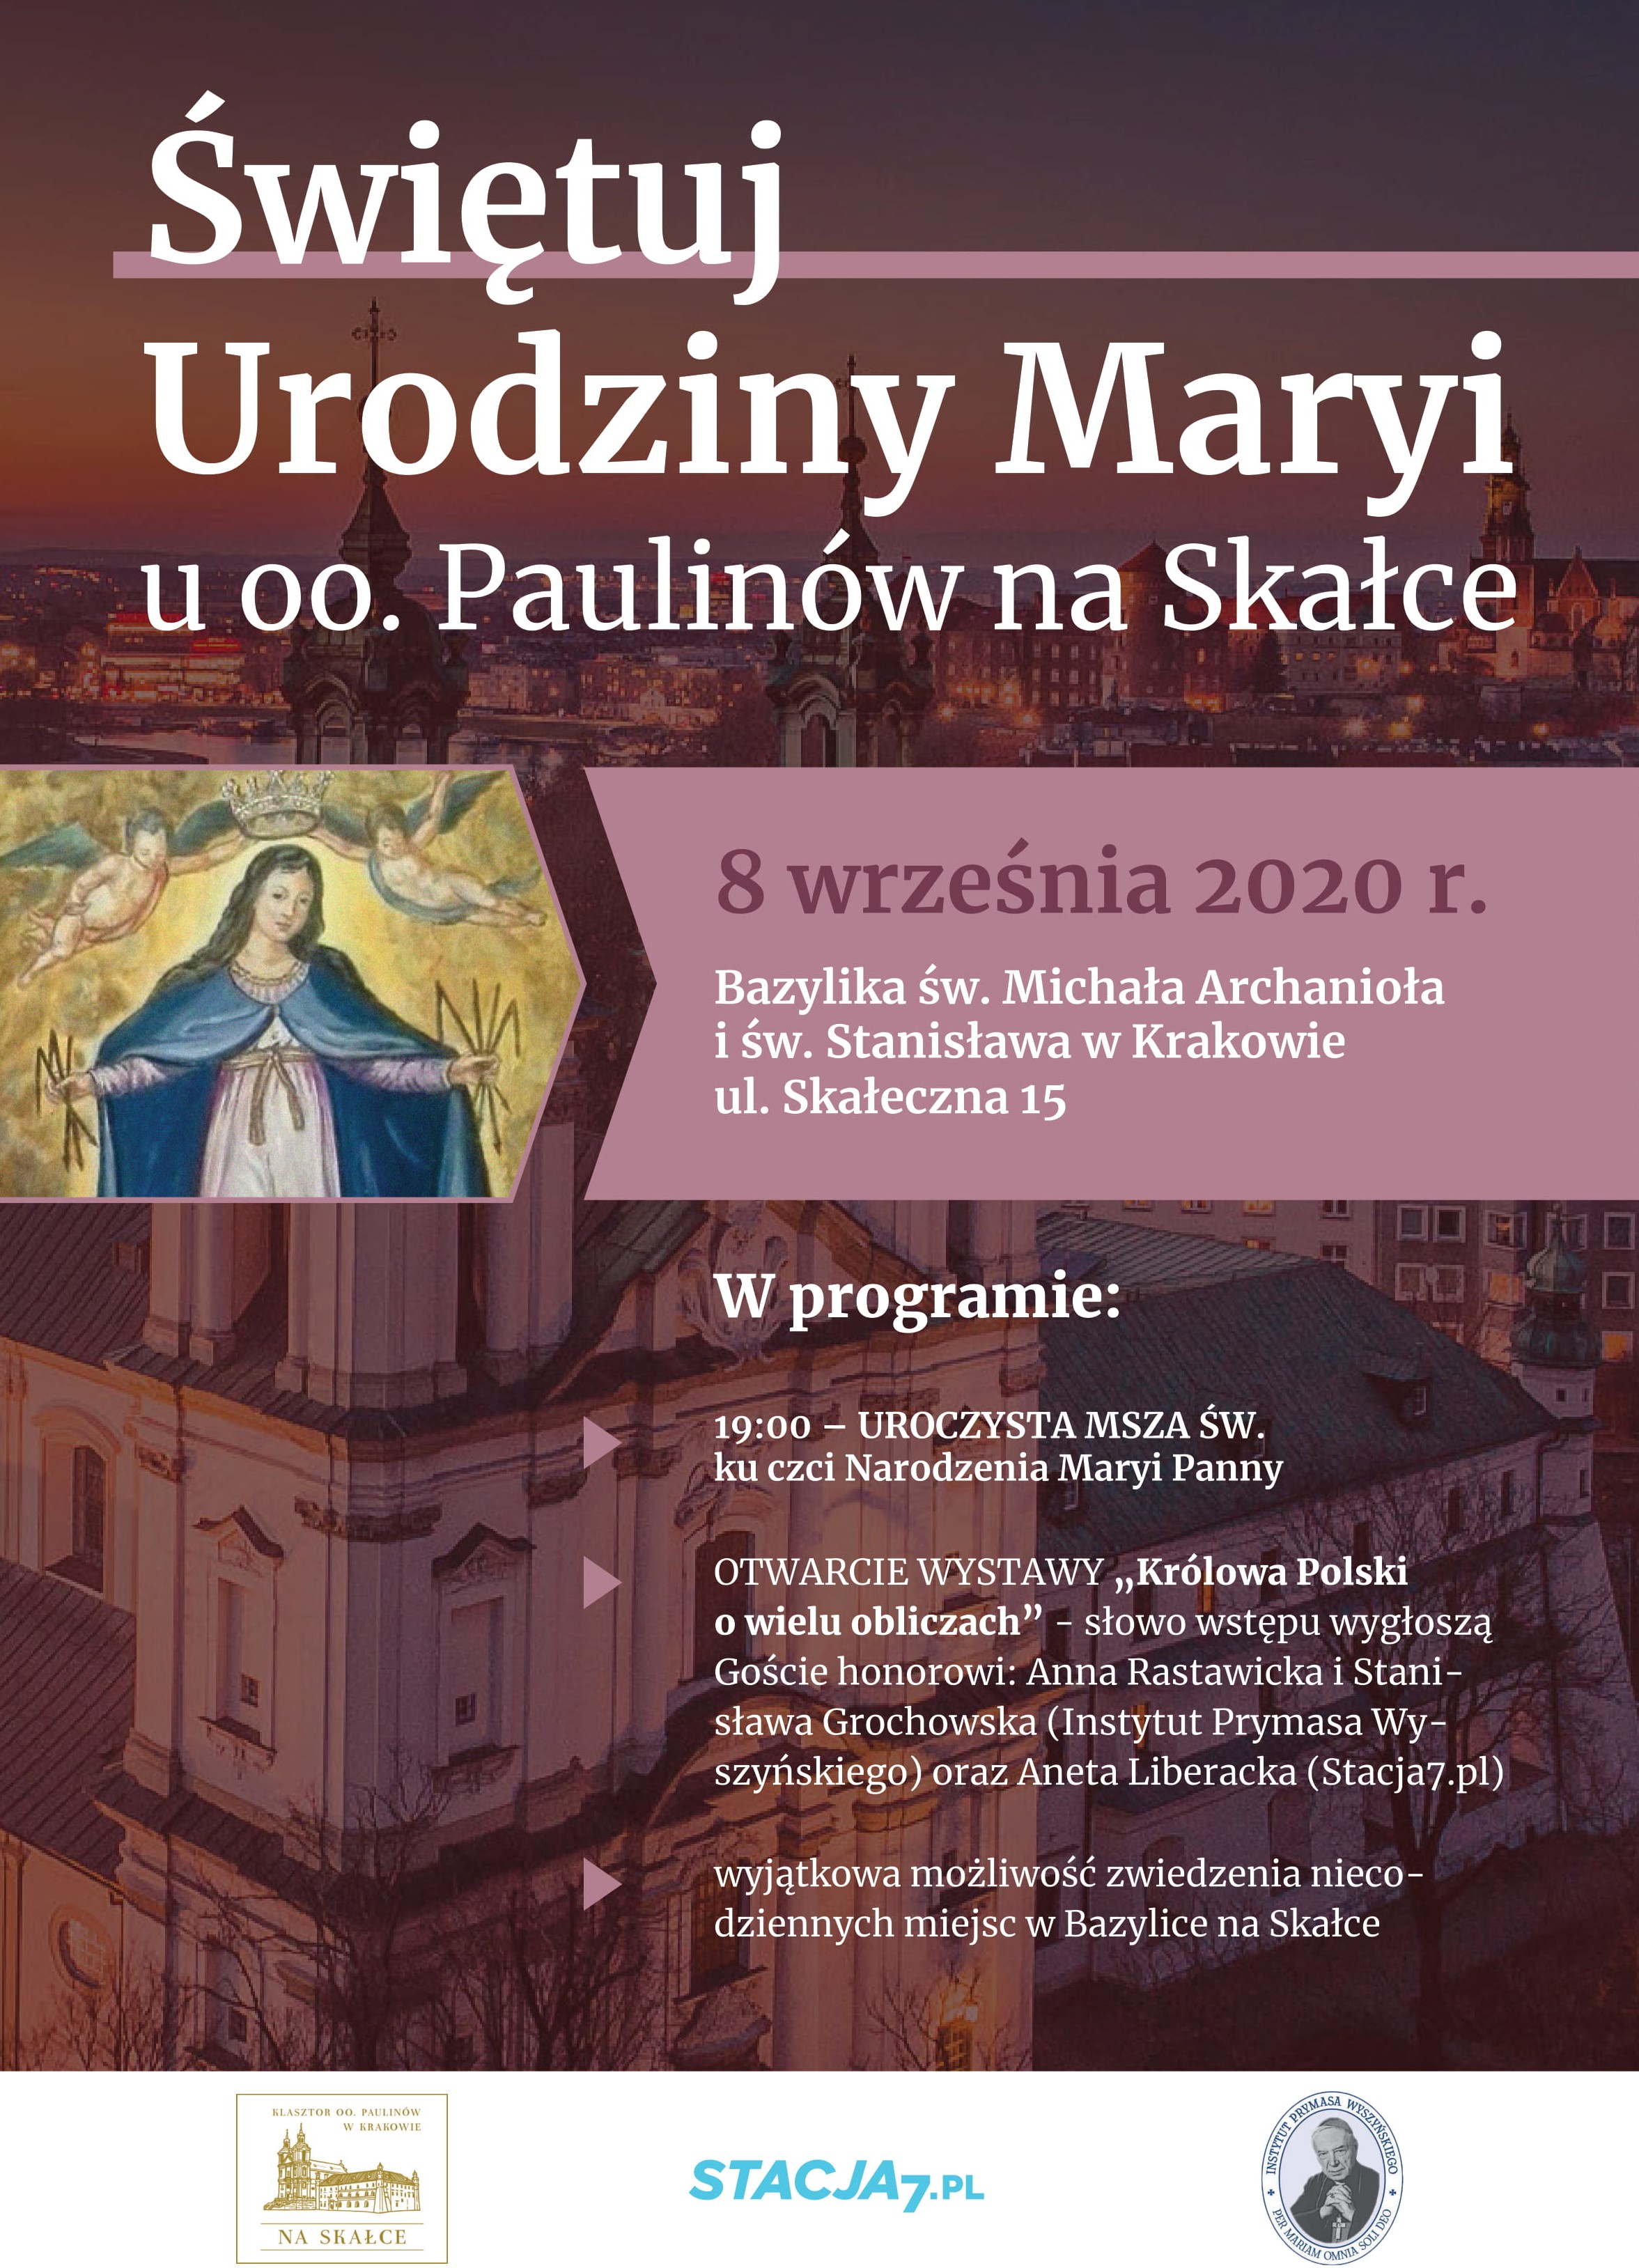 Świętuj urodziny Maryi na krakowskiej Skałce